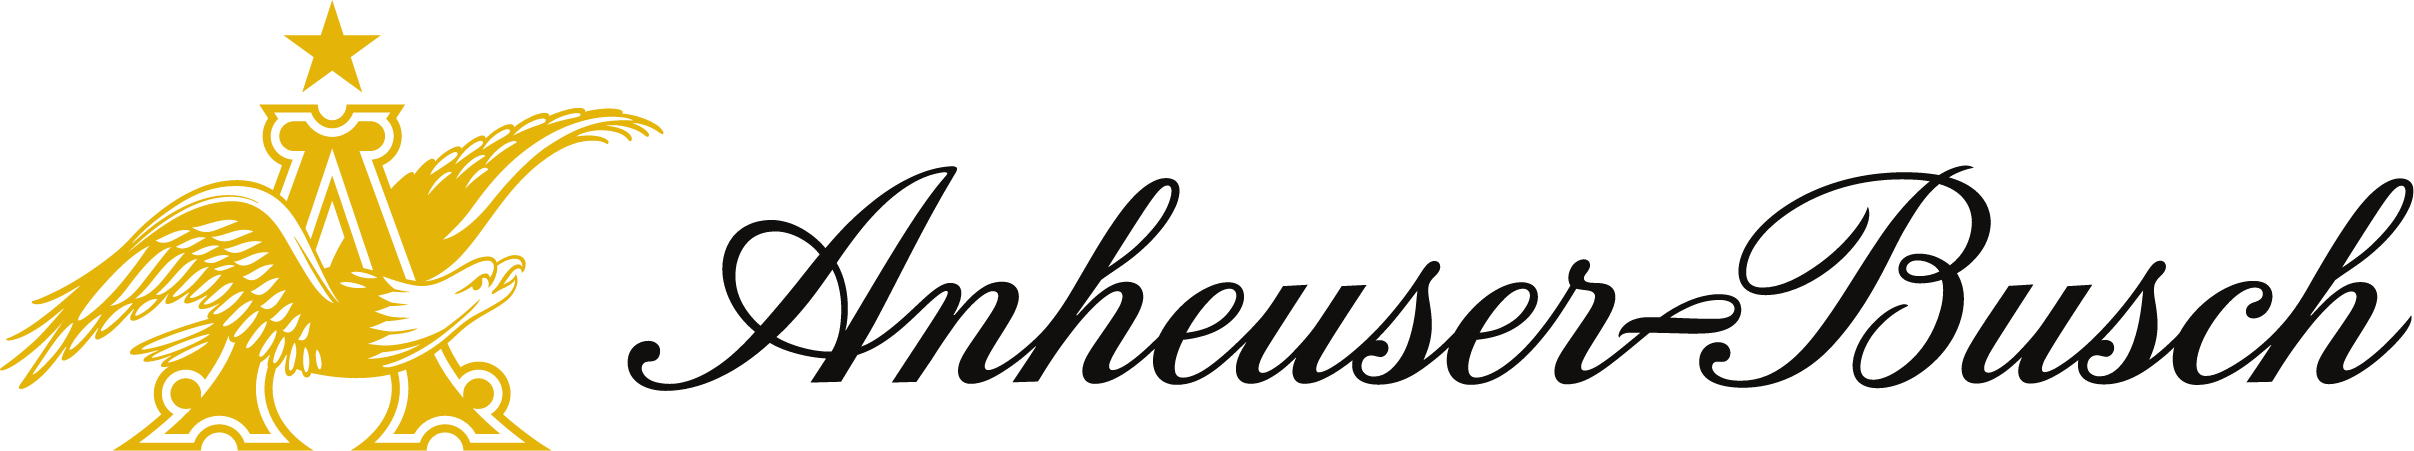 Logo: Anheuser Busch